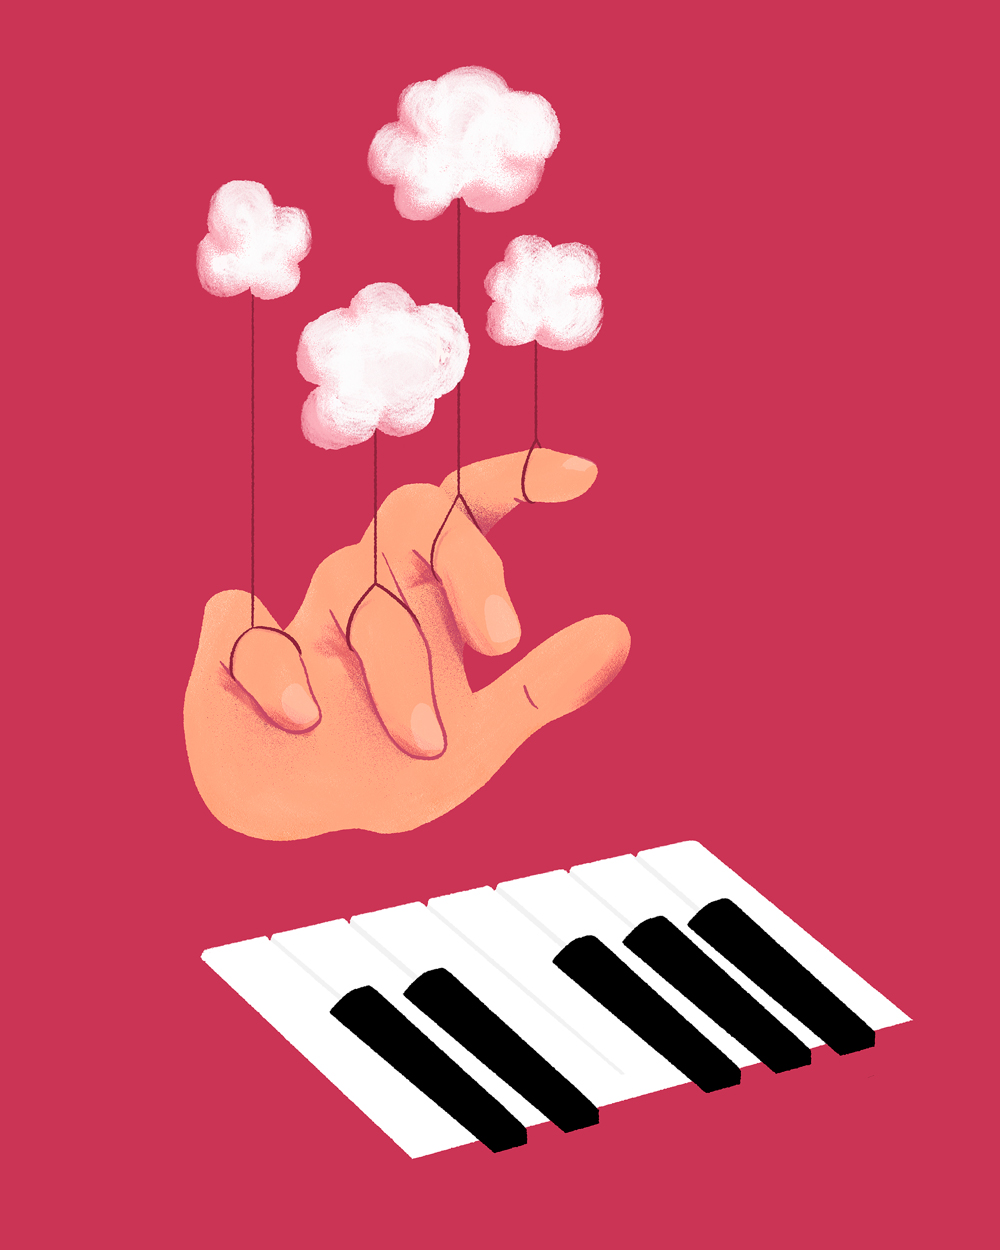 Une main flotte au-dessus de quelques touches de piano. Chaque doigt est retenu en l'air par un fil auquel est attaché un petit nuage